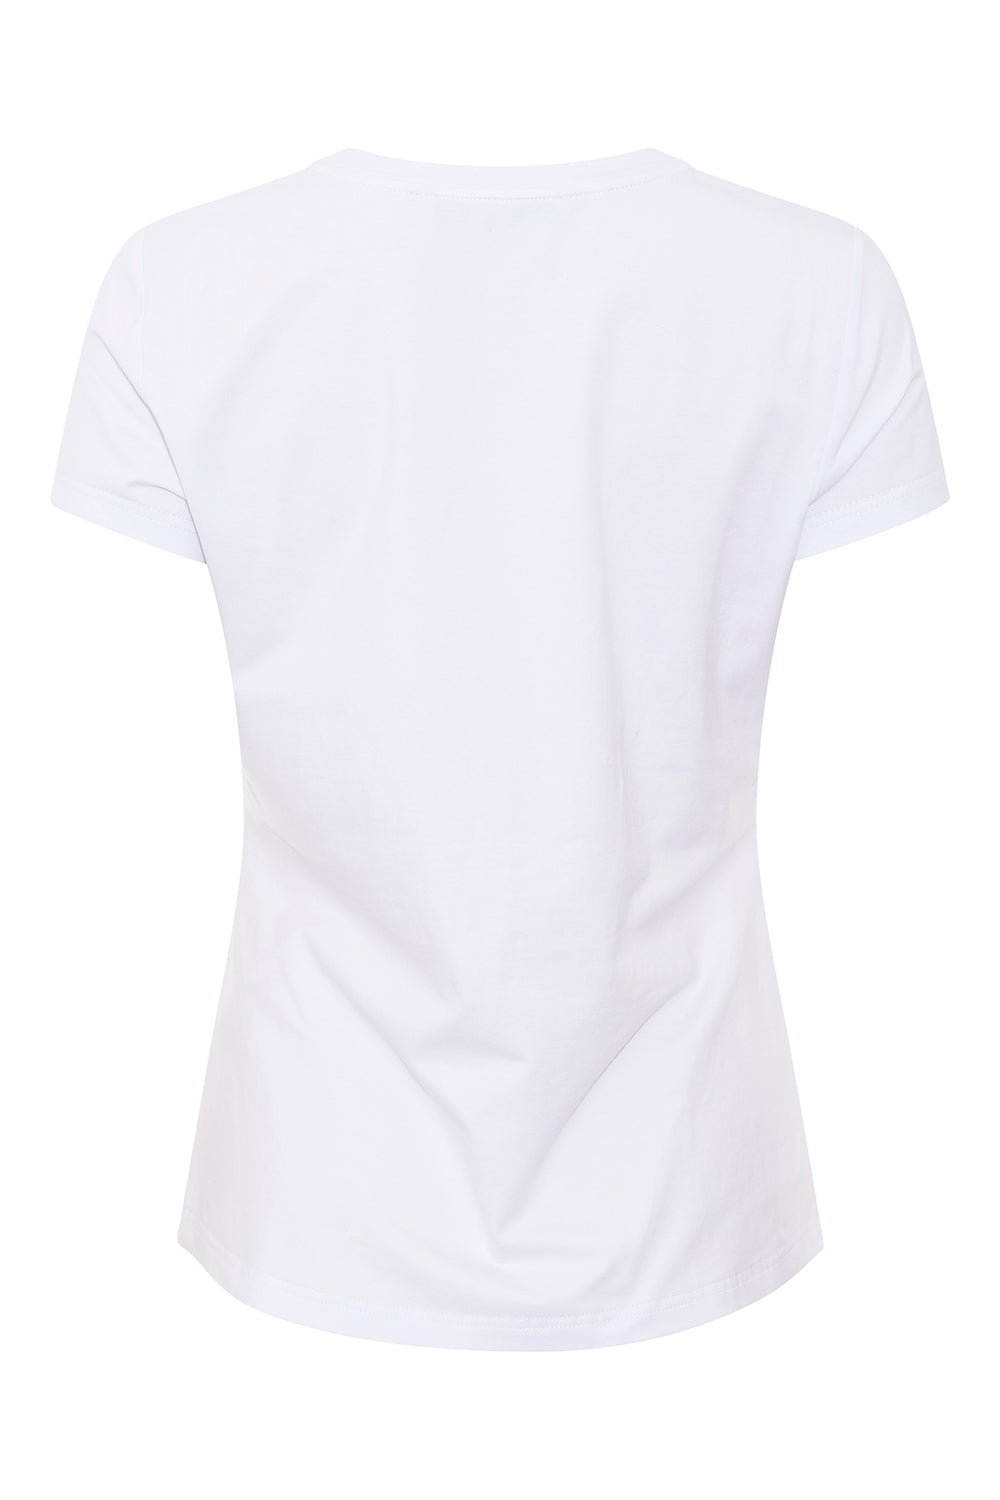 PBO Purves glitter T-shirt T-SHIRTS 01 White